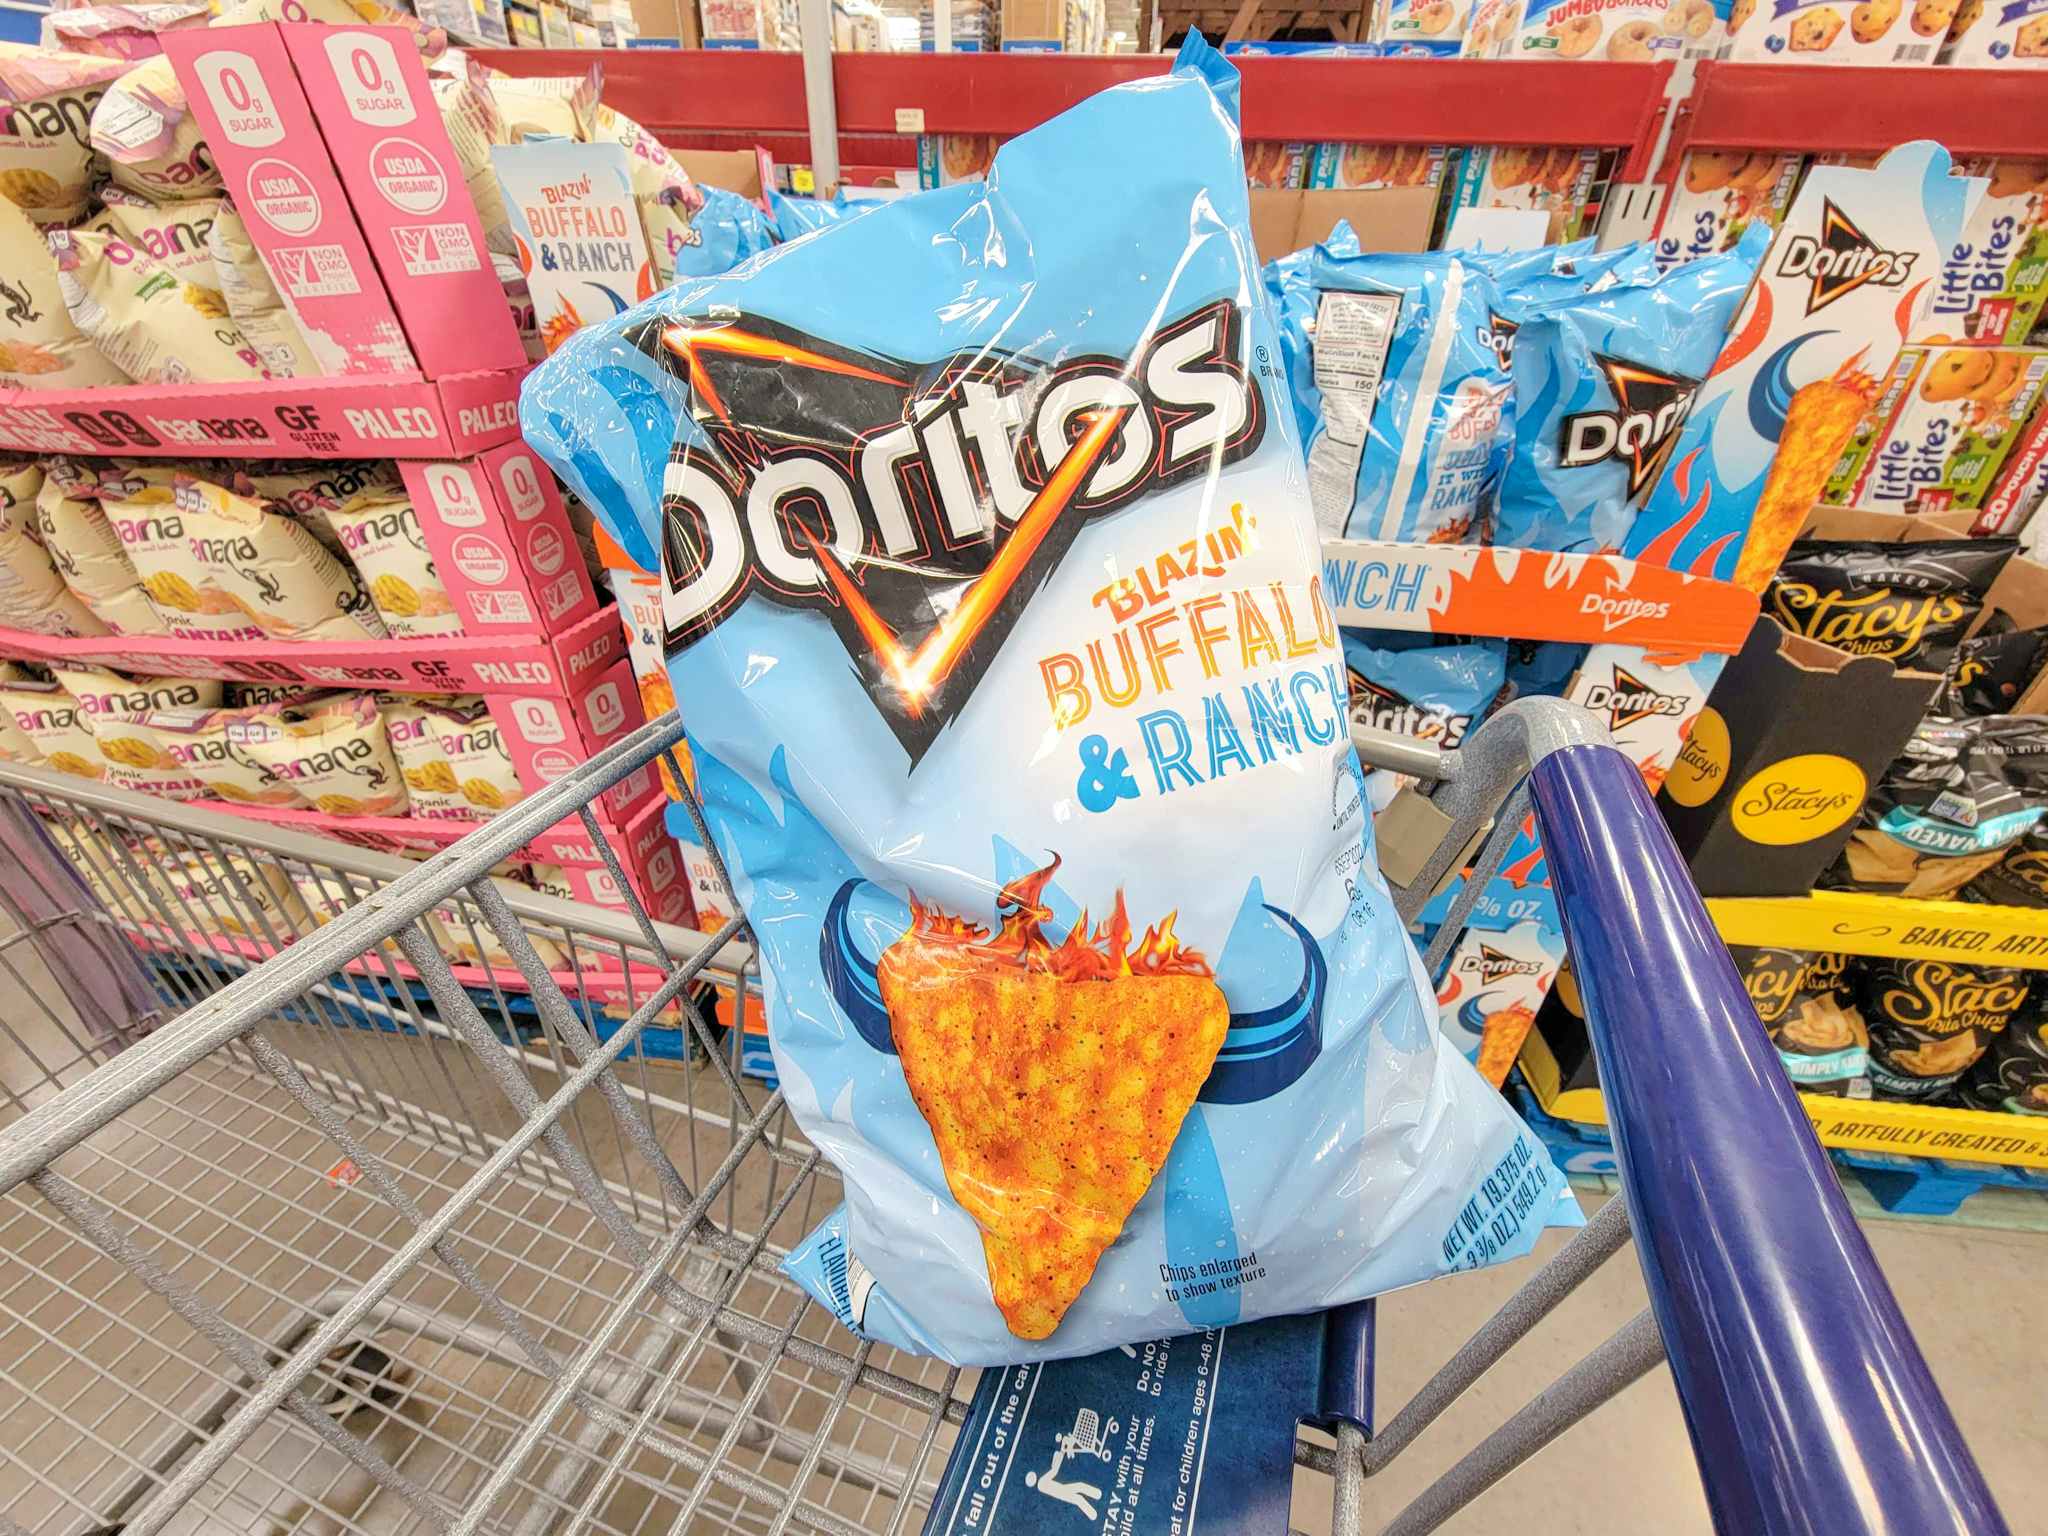 a bag of blazin buffalo and ranch doritos in a cart